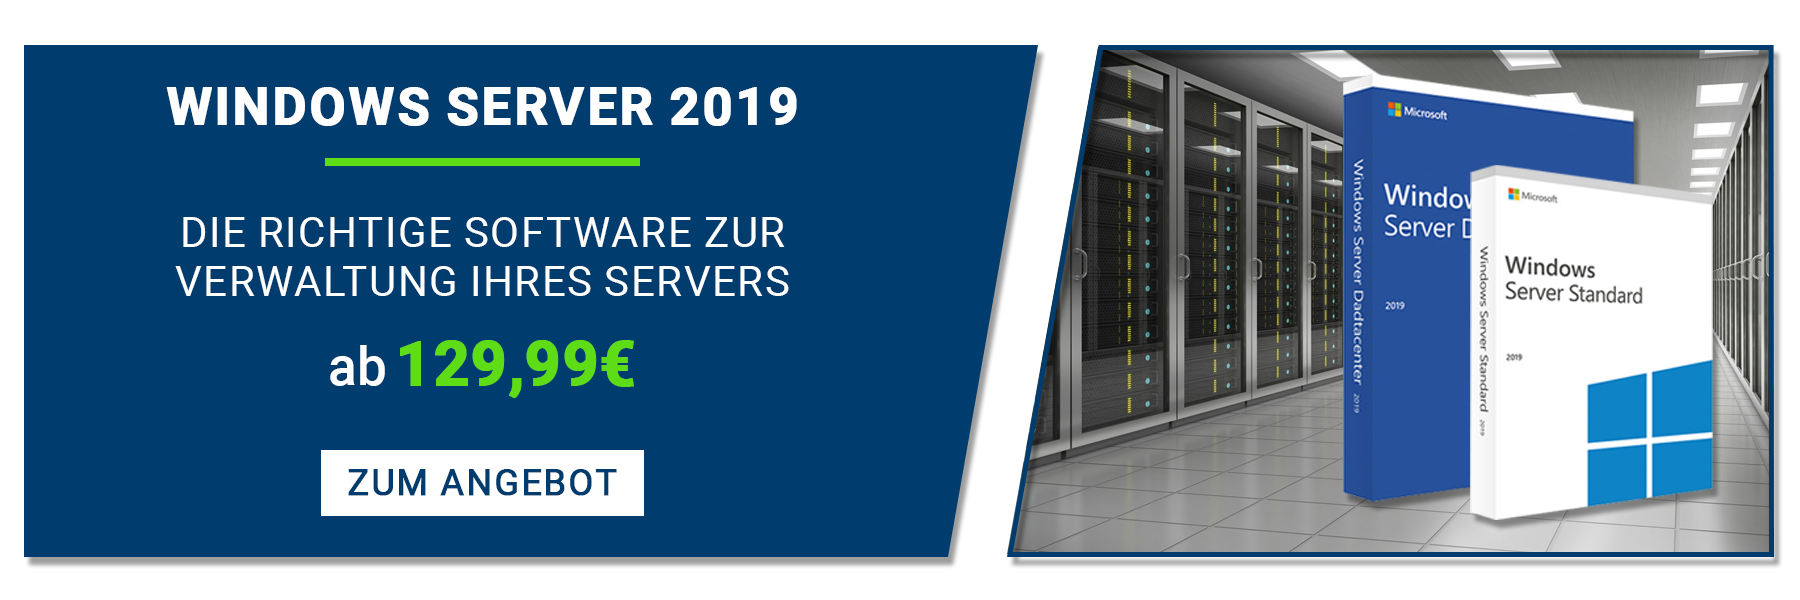 Windows Server 2019: Die neueste Version des Server-Betriebssystems von Microsoft, die mehr Sicherheit und verbesserte Leistung bietet.